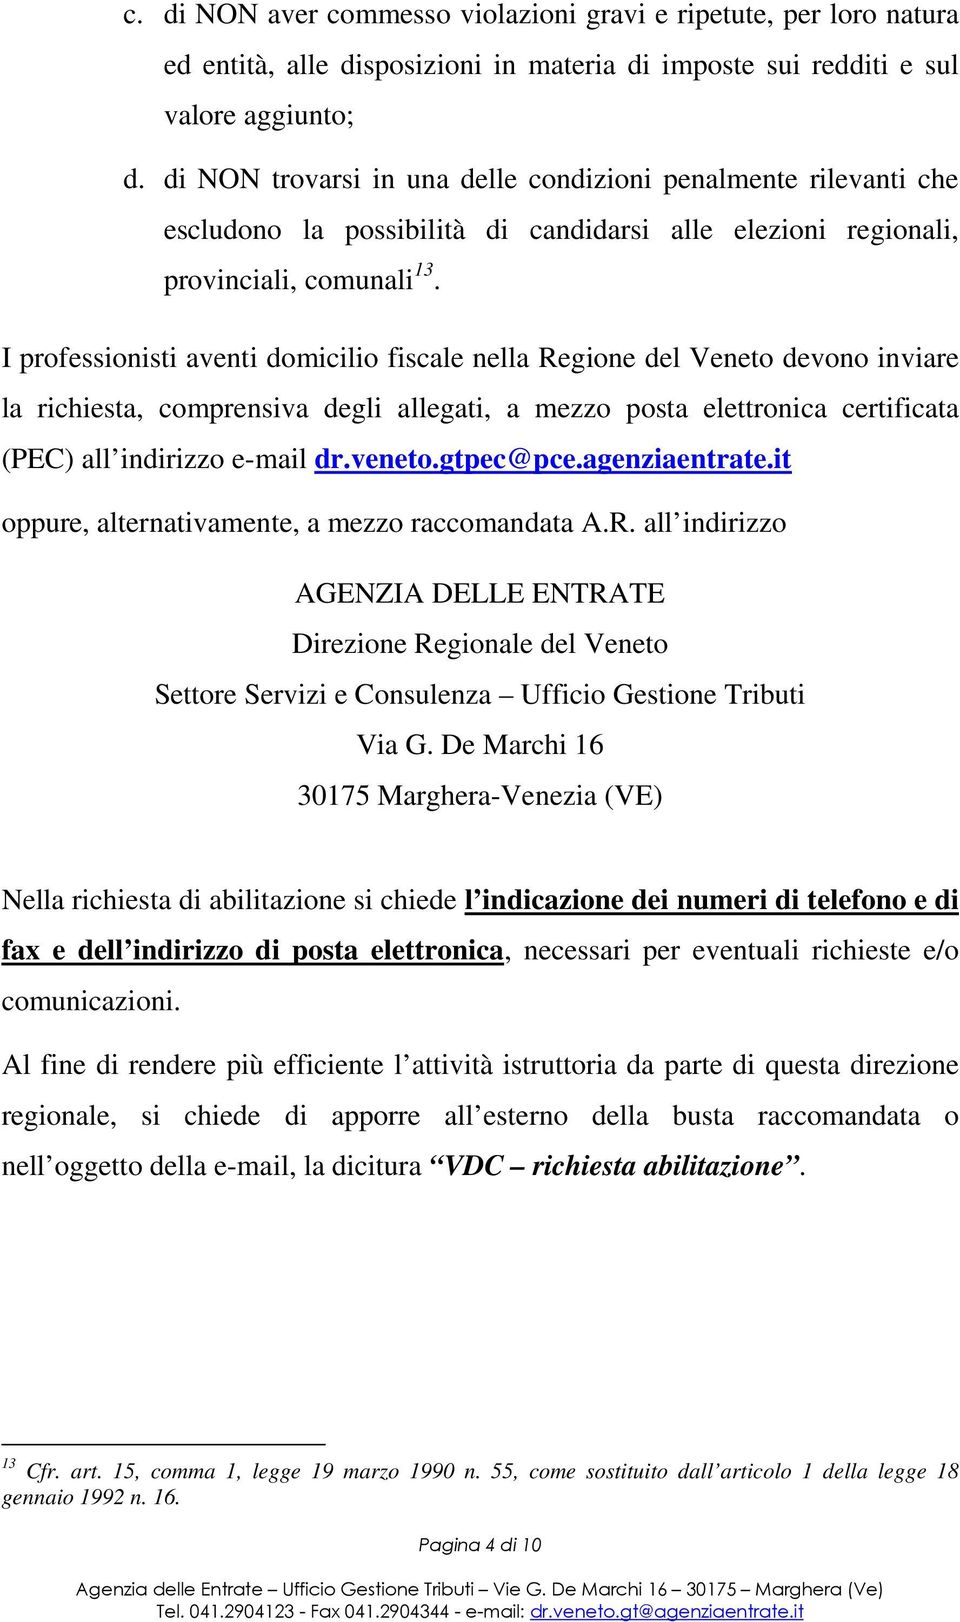 I professionisti aventi domicilio fiscale nella Regione del Veneto devono inviare la richiesta, comprensiva degli allegati, a mezzo posta elettronica certificata (PEC) all indirizzo e-mail dr.veneto.